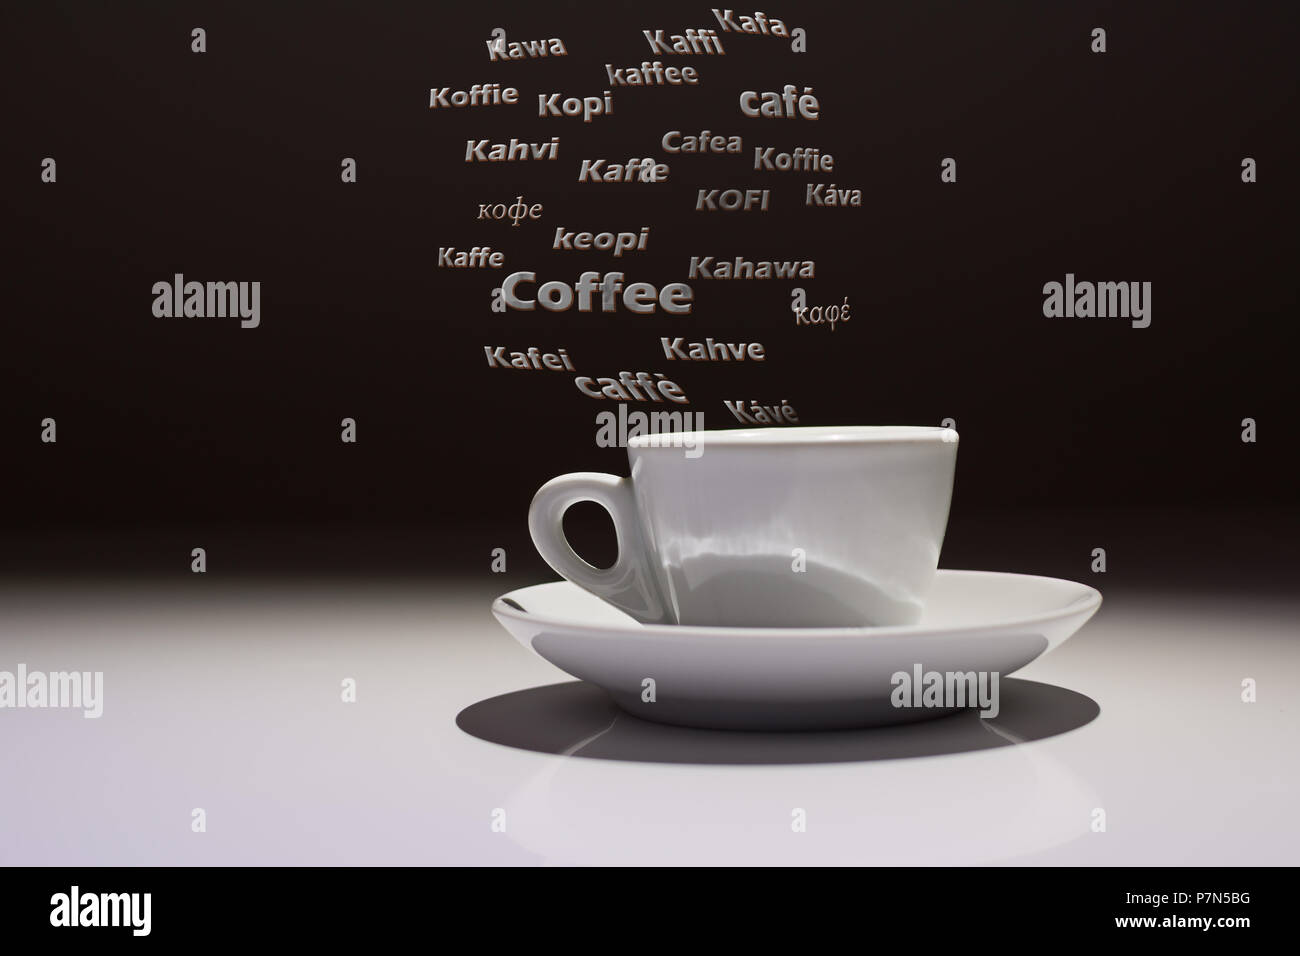 Taza de café con la palabra Caffè en muchos idiomas del mundo Foto de stock